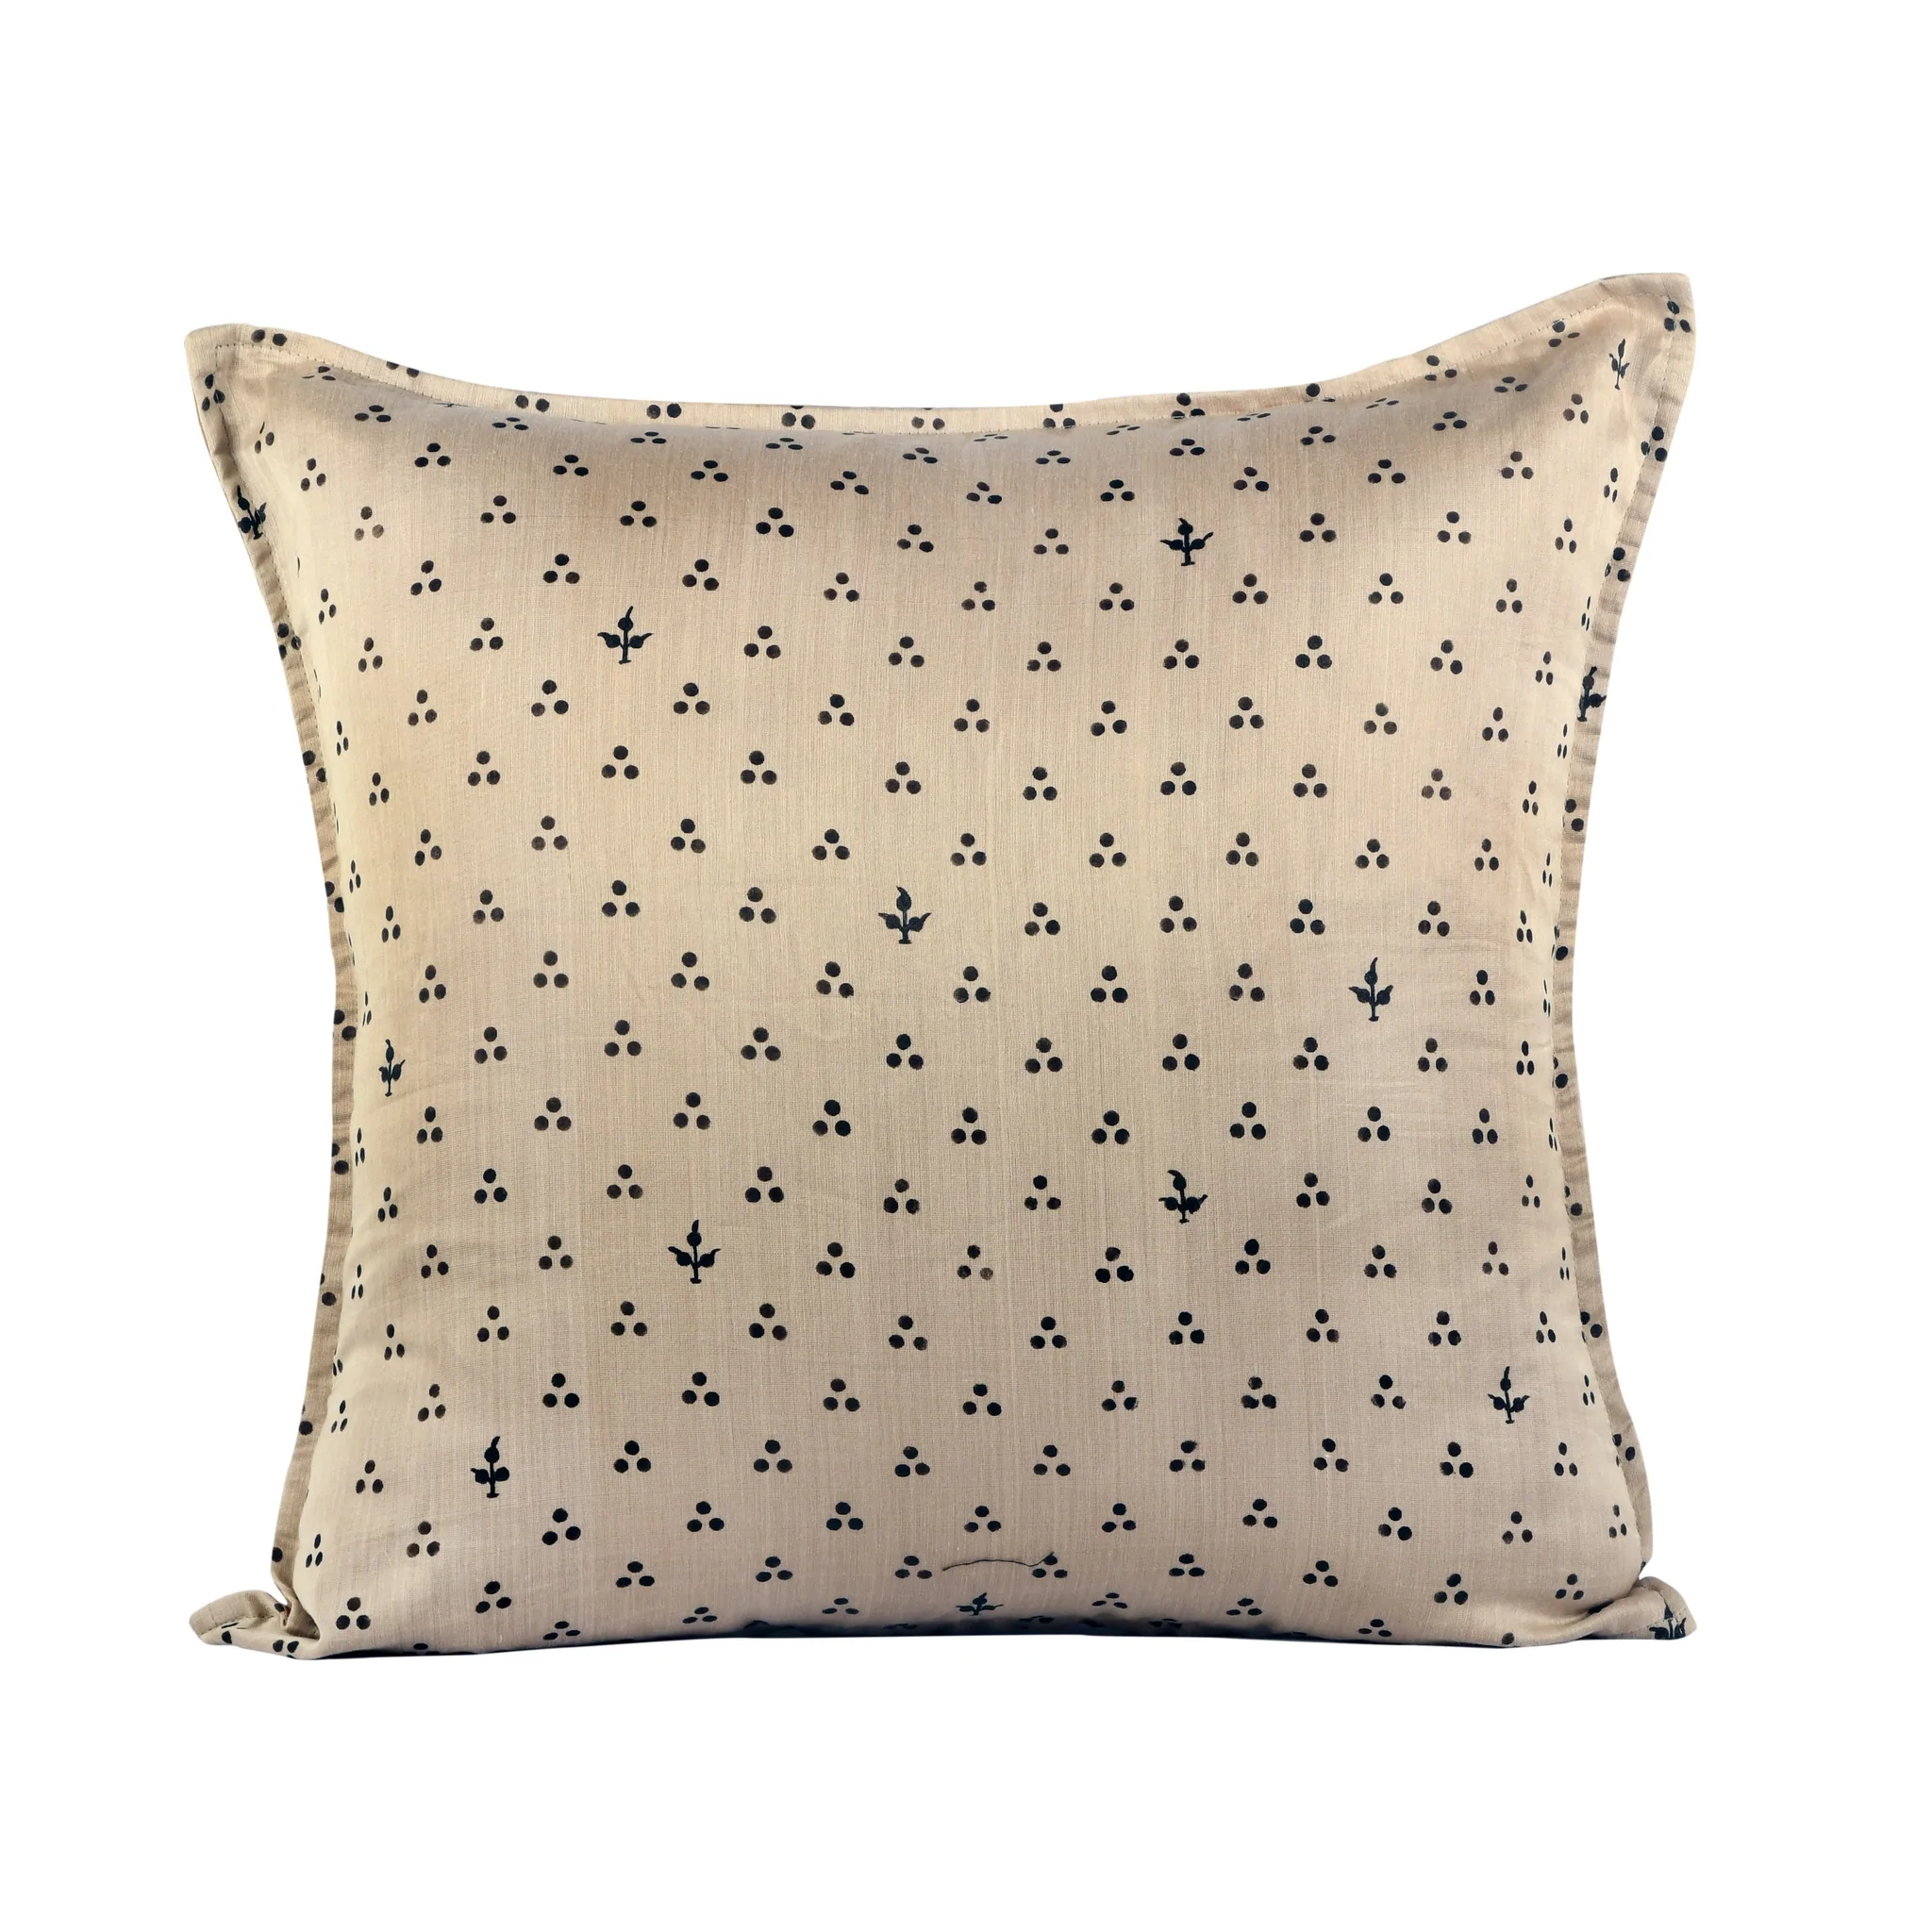 Maheshwari Handpainted Cushion Cover 1024×1024@2x